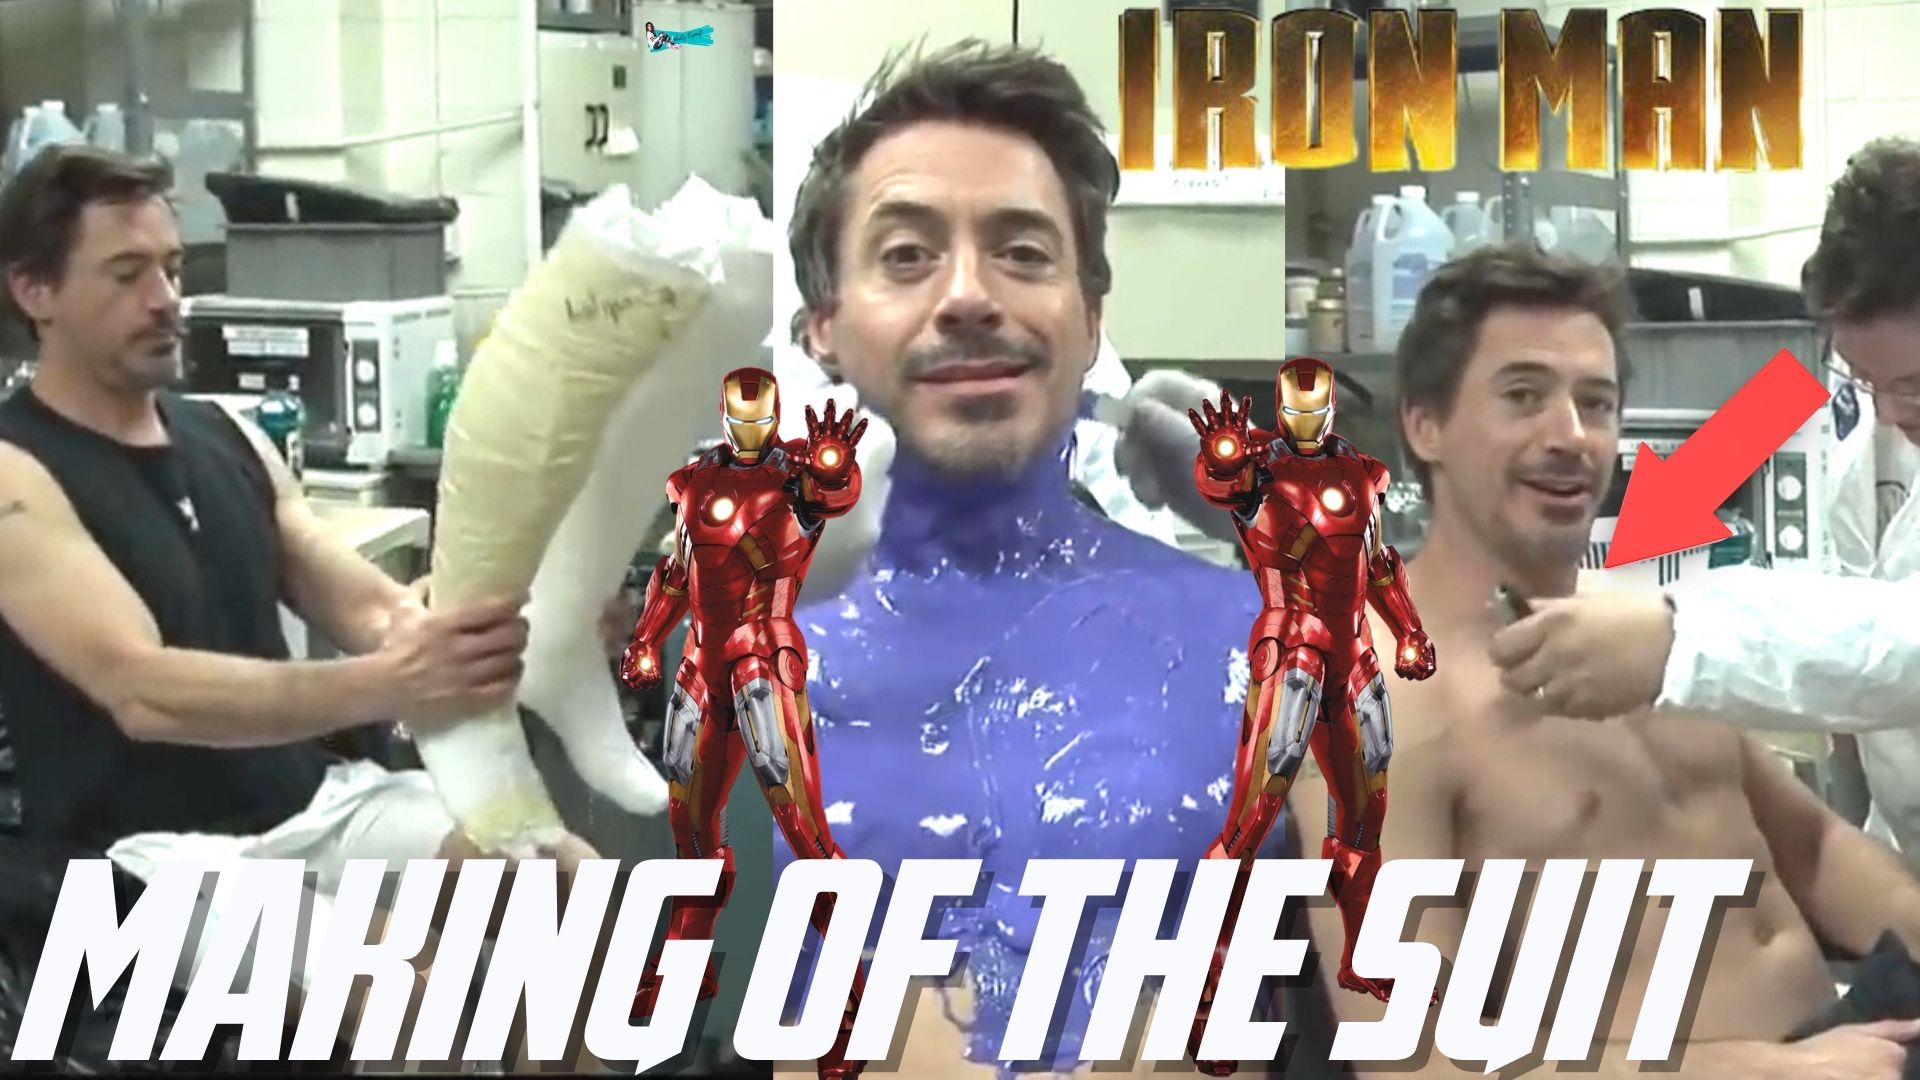 Iron Man Suit Making